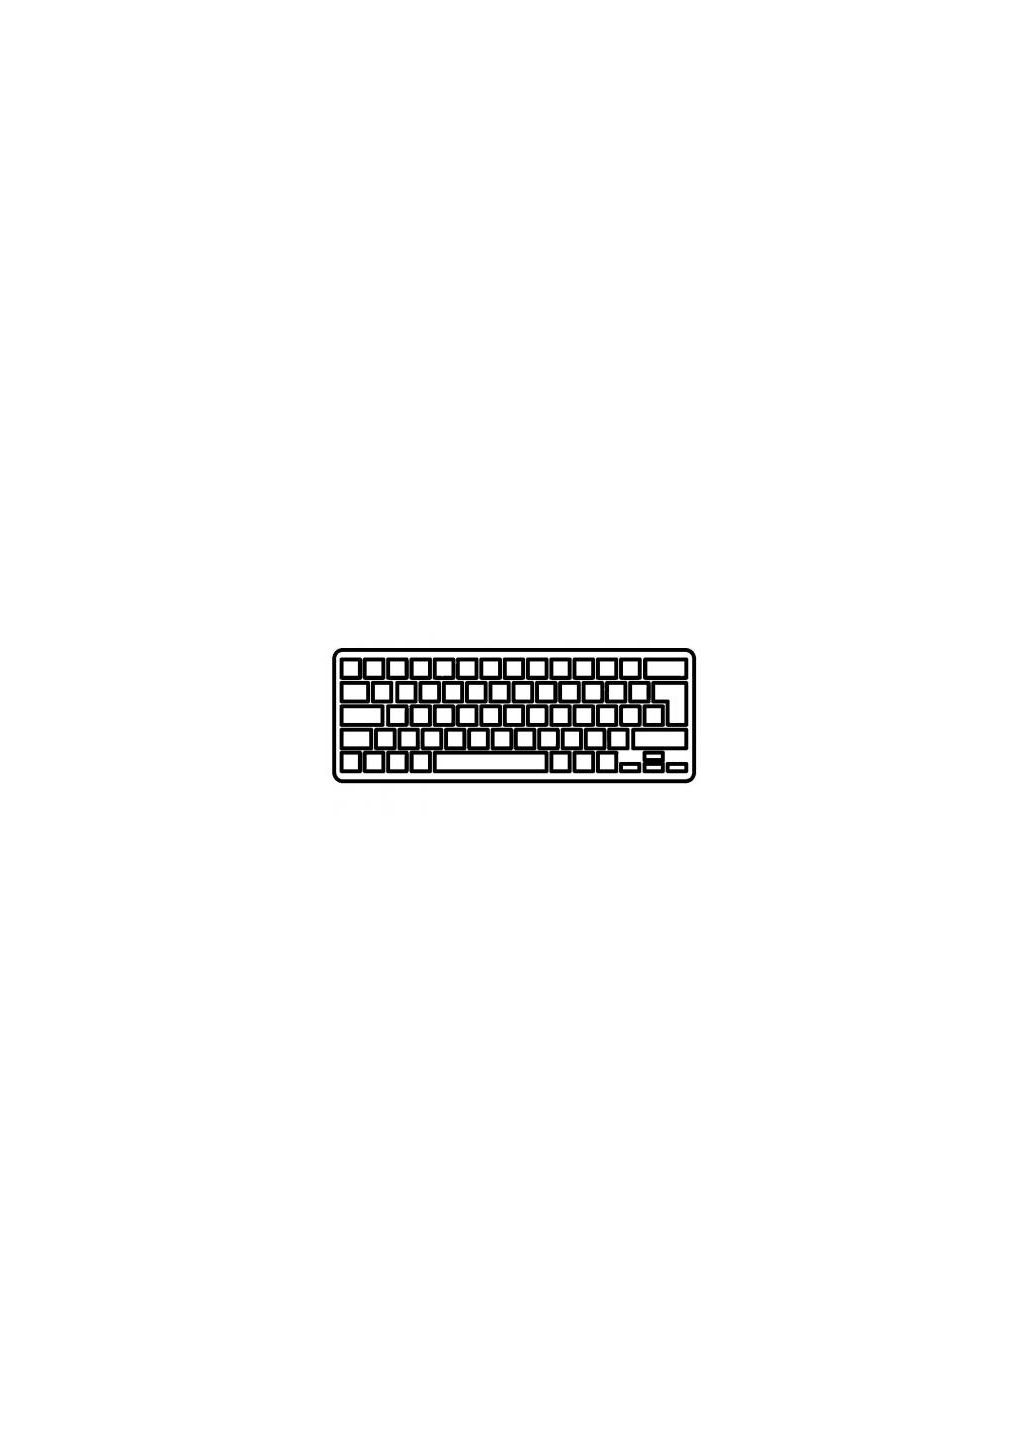 Клавиатура ноутбука (A43169) HP 540/550/6520s/6720s черная ru (276707672)